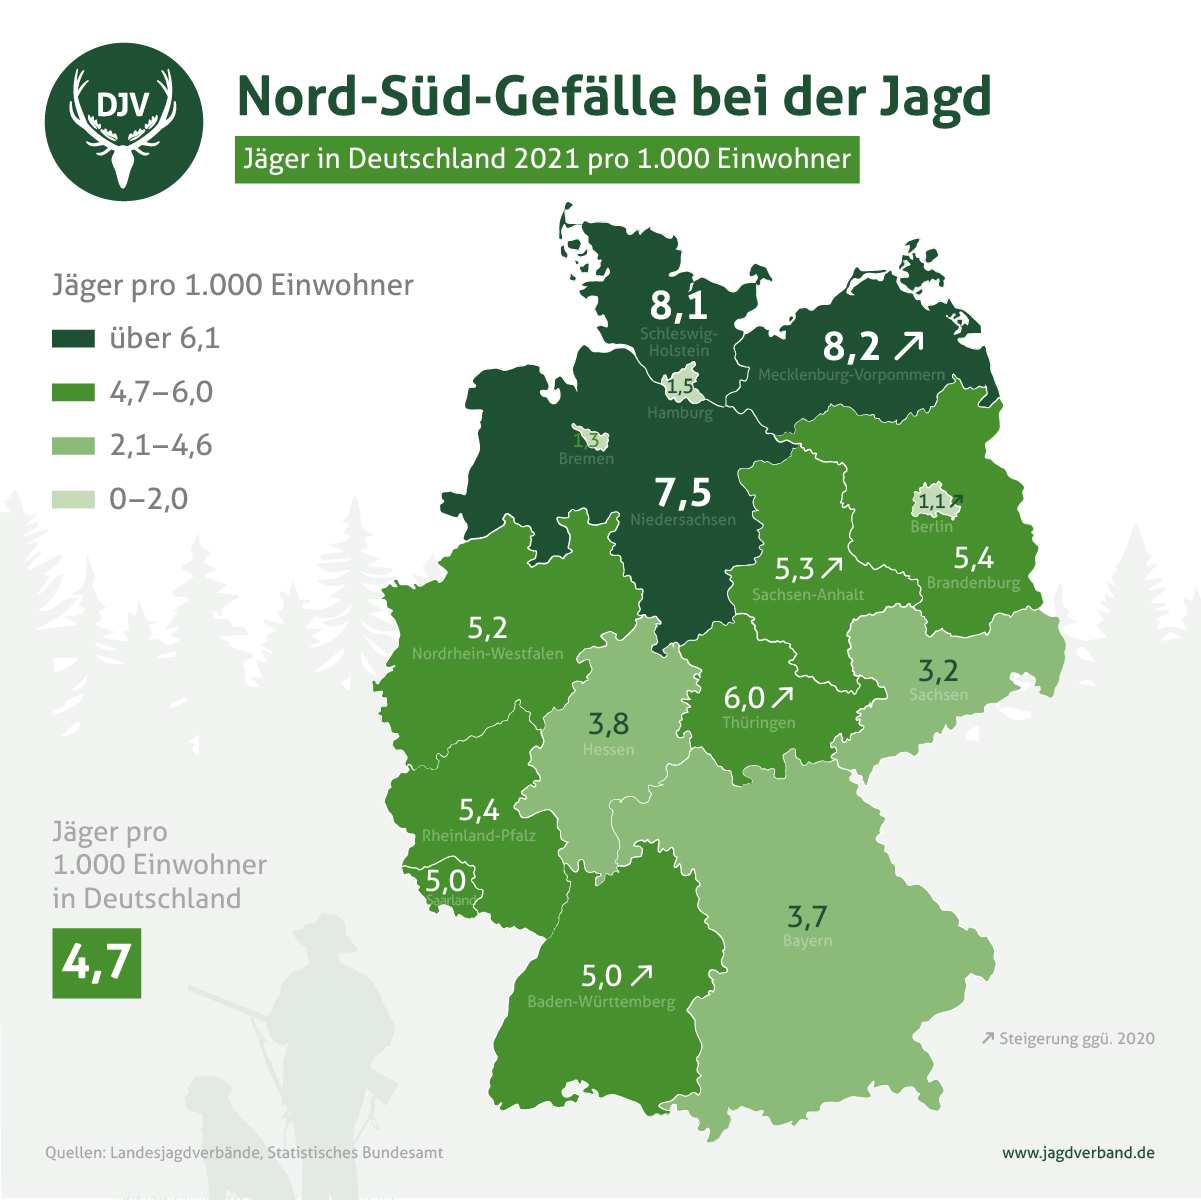 Grafik mit den Jägerzahlen aufgeteilt nach Bundesländern in einer Deutschlandkarte